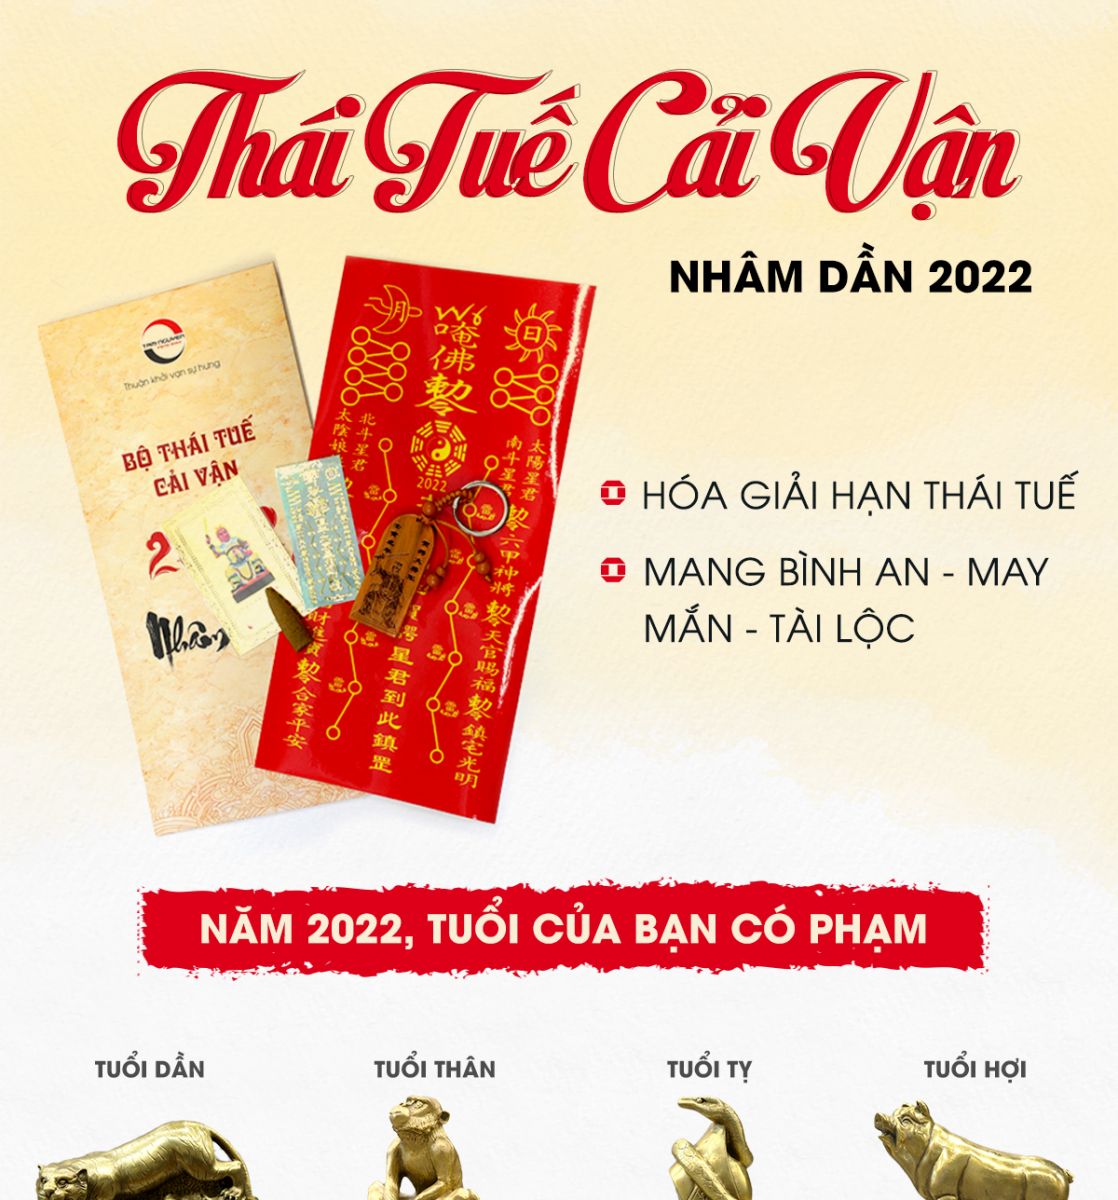 Bộ Thái Tuế Cải Vận Nhâm Dần 2022